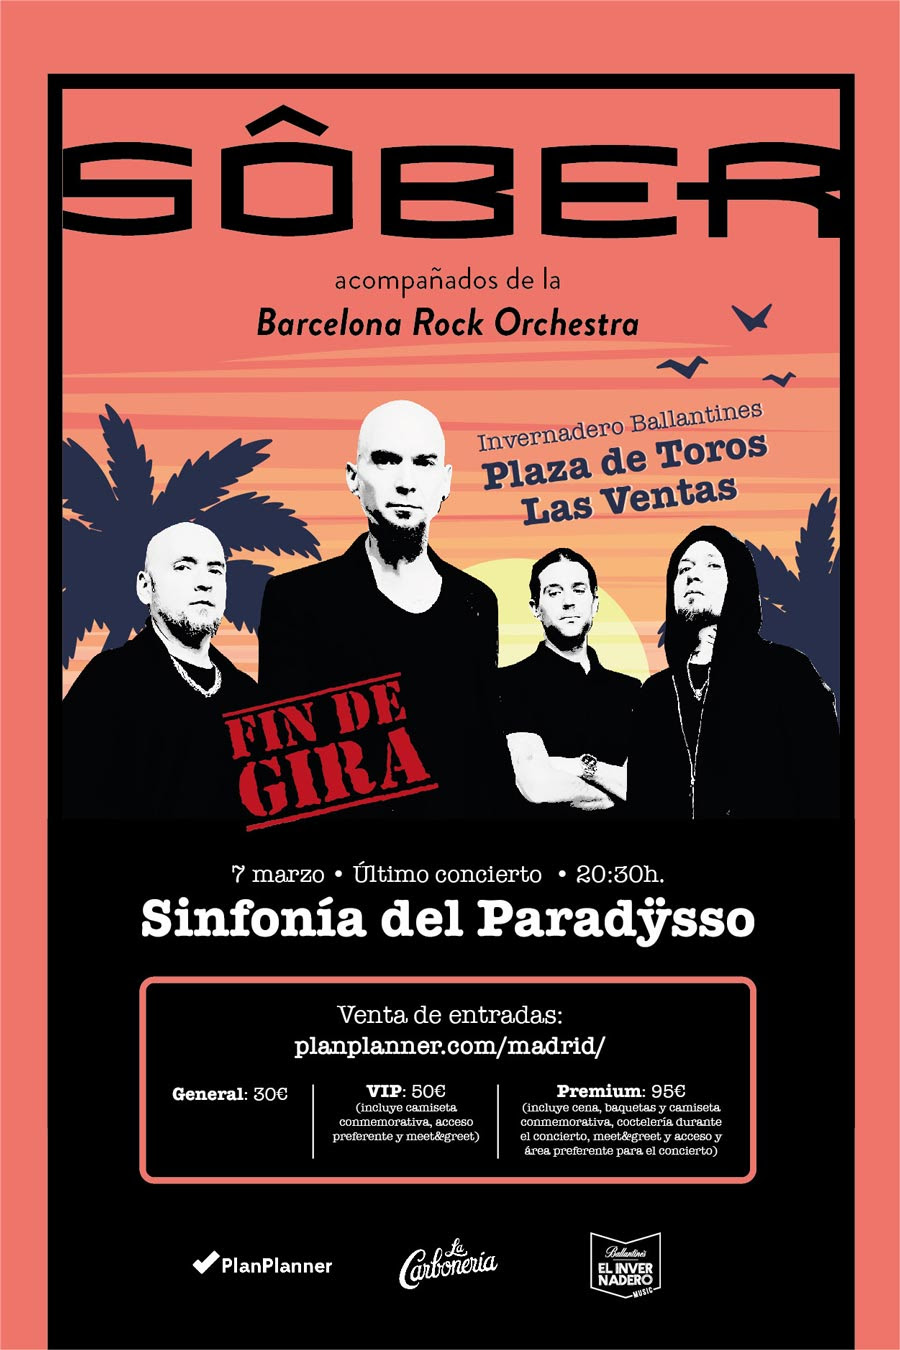 [Sôber] despedida de La sinfonía del Paradÿsso el 7 de marzo en Madrid